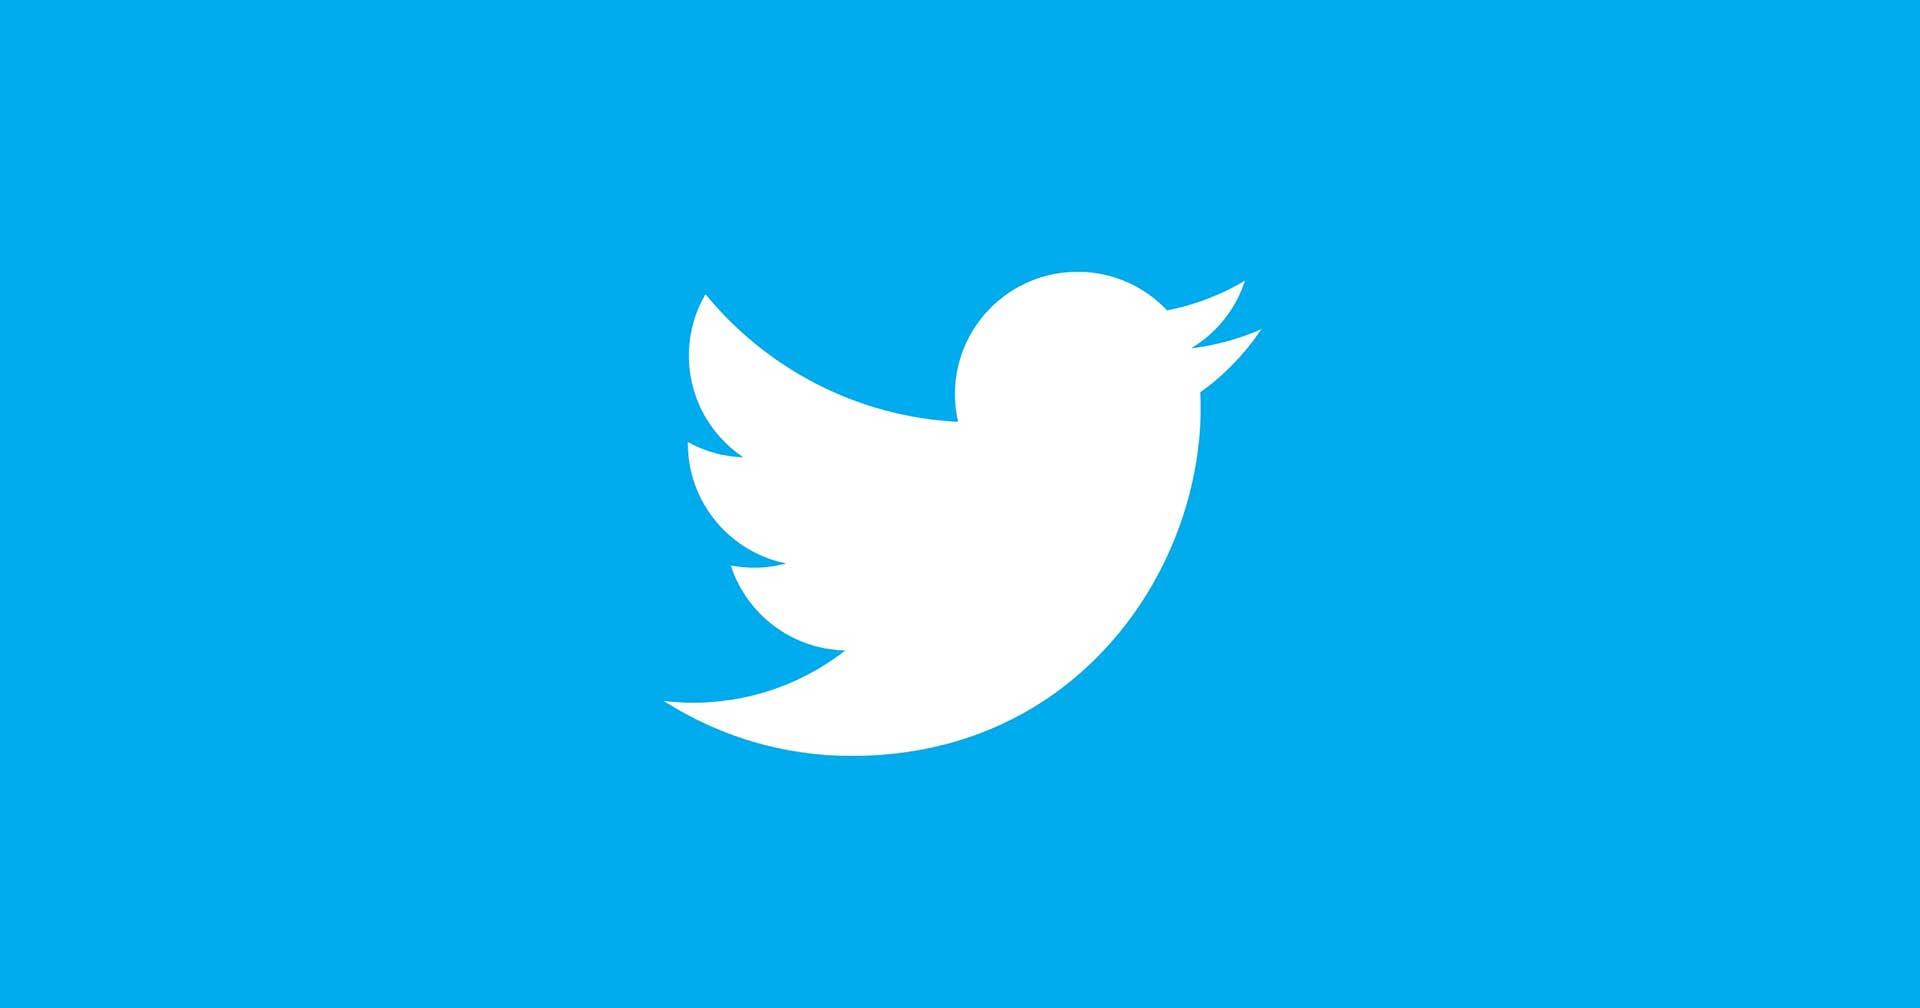 แฮกเกอร์ได้ใช้ช่องโหว่บน Twitter แฮกข้อมูลของผู้ใช้มากกว่า 5 ล้านรายไปขาย